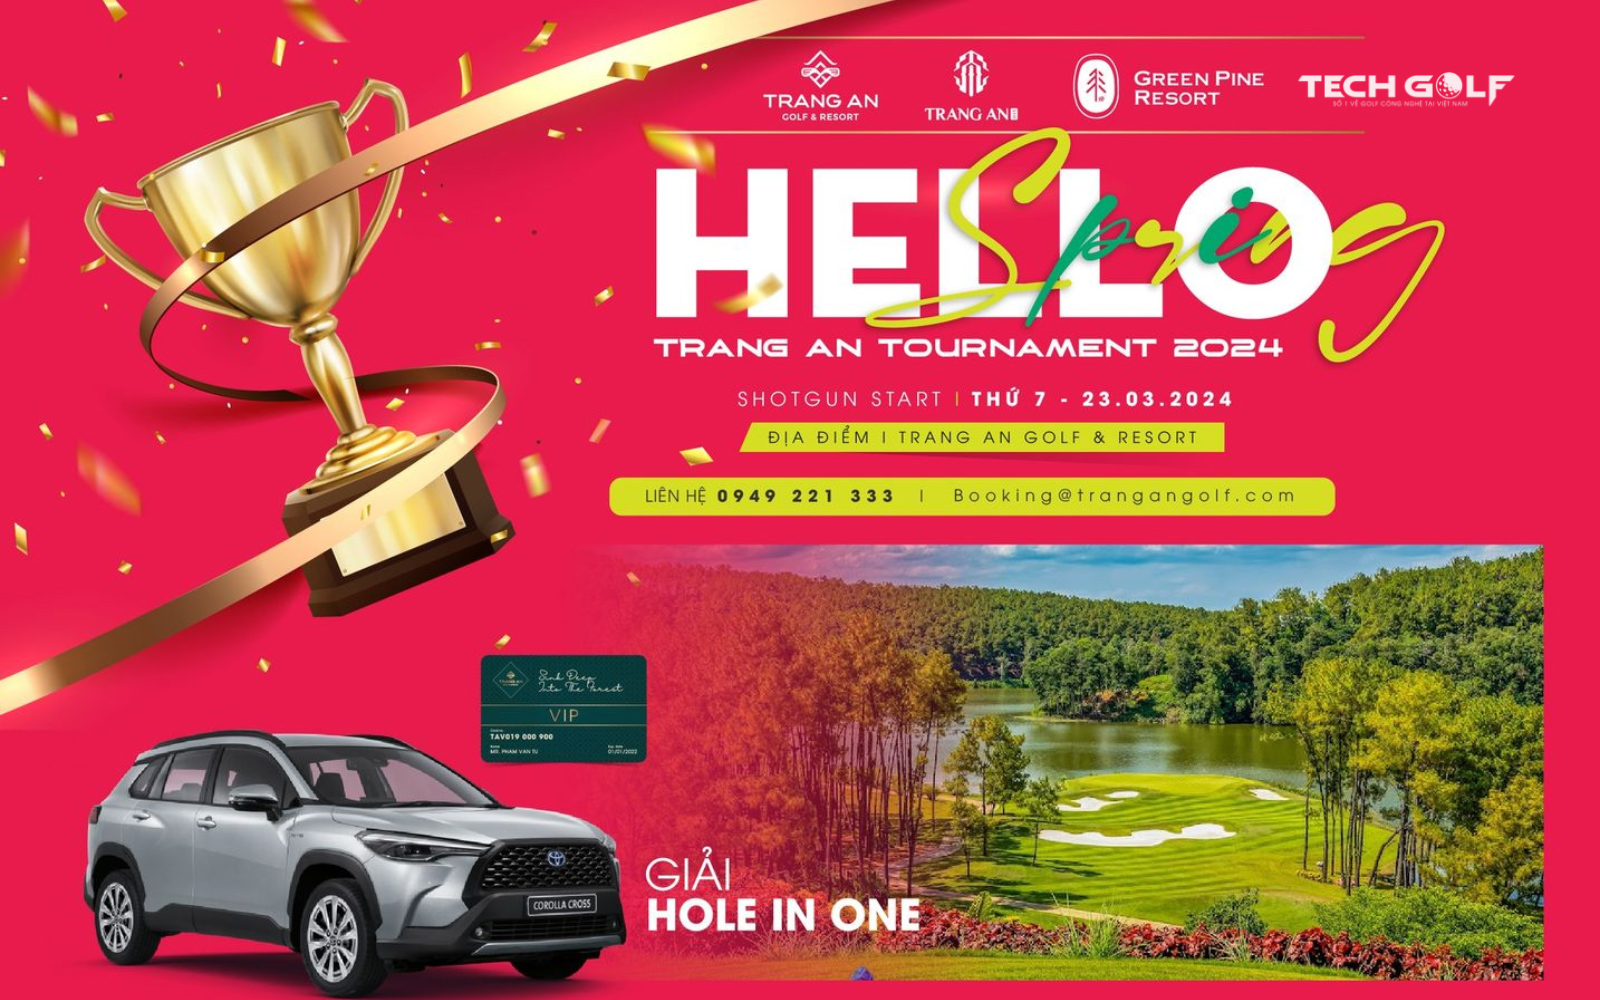 Giải golf Hello Spring Trang An Tournament 2024 với tổng giá trị giải thưởng lên đến 1 tỷ đồng